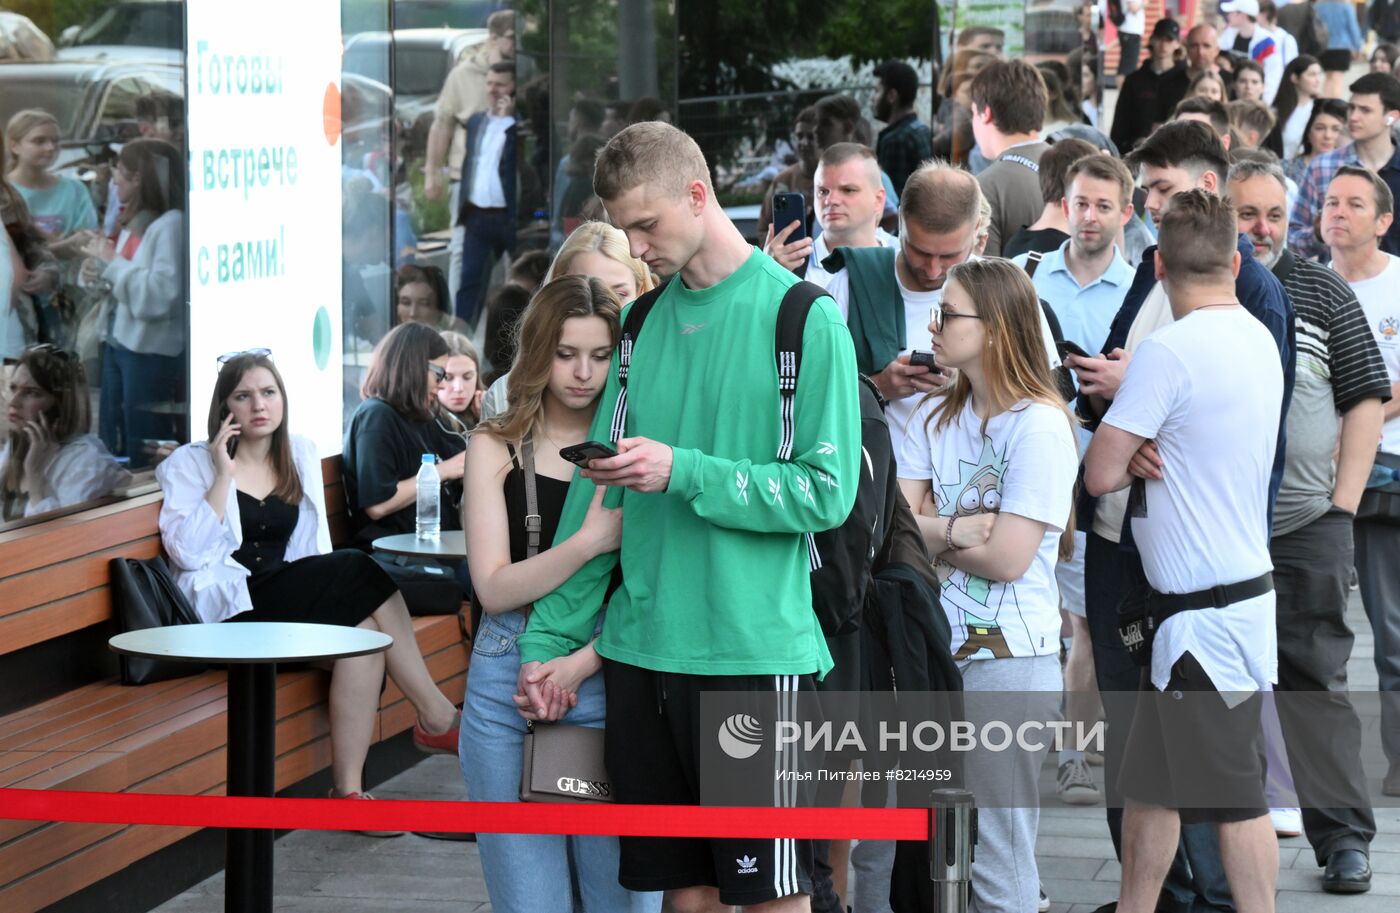 Очереди у открывшегося ресторана быстрого питания "Вкусно и точка" в Москве